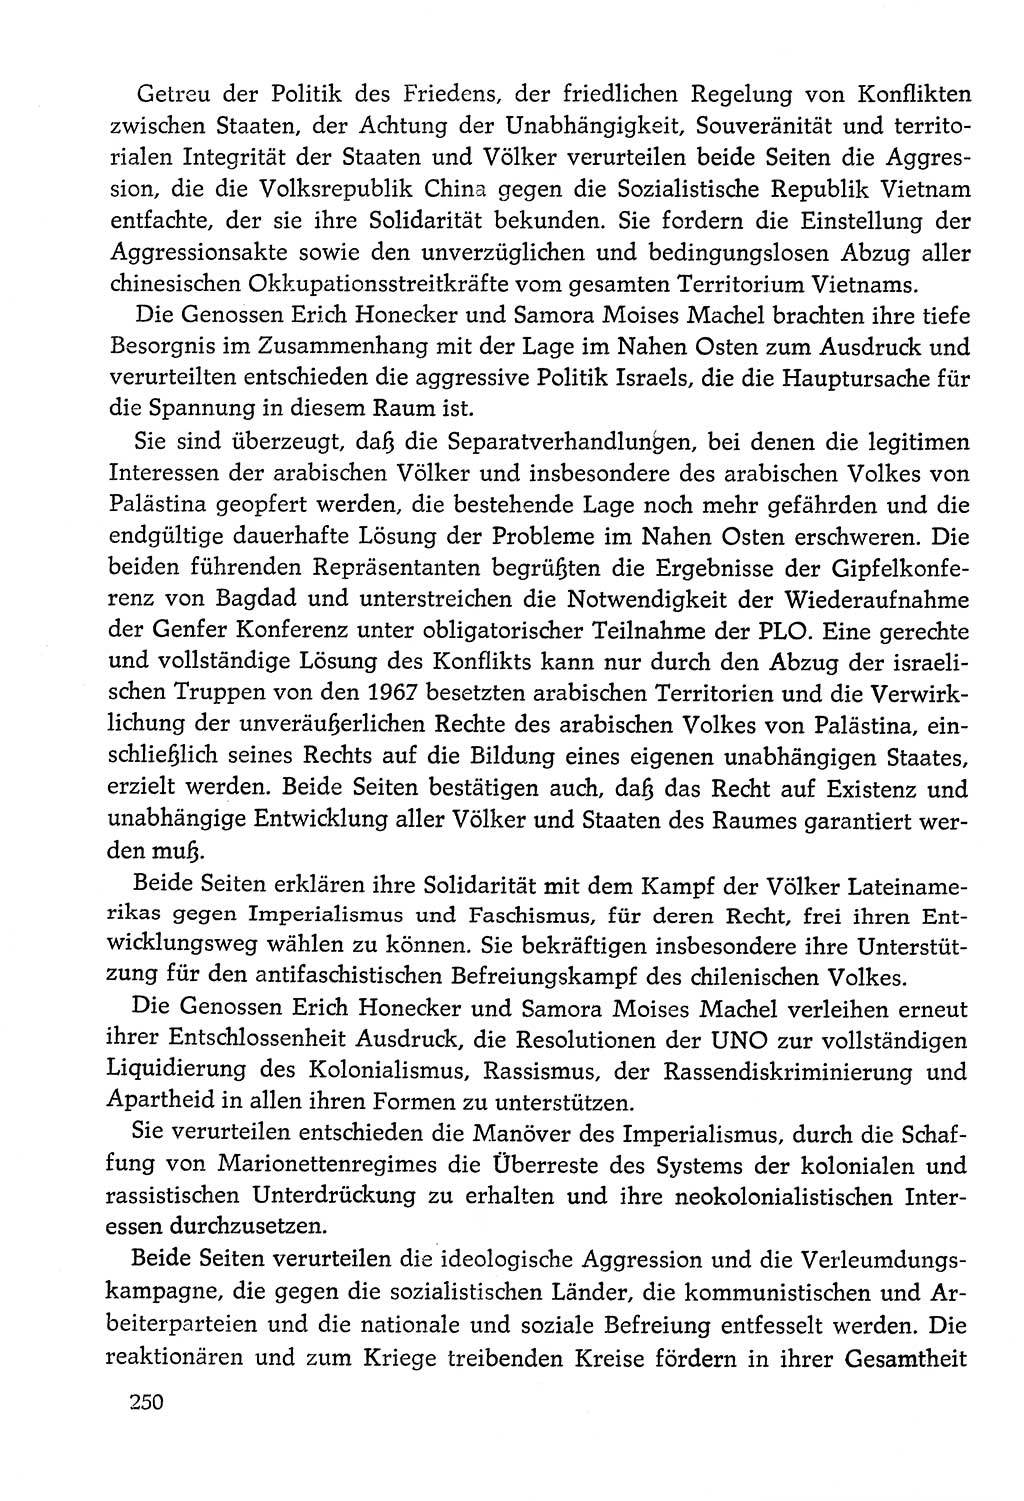 Dokumente der Sozialistischen Einheitspartei Deutschlands (SED) [Deutsche Demokratische Republik (DDR)] 1978-1979, Seite 250 (Dok. SED DDR 1978-1979, S. 250)